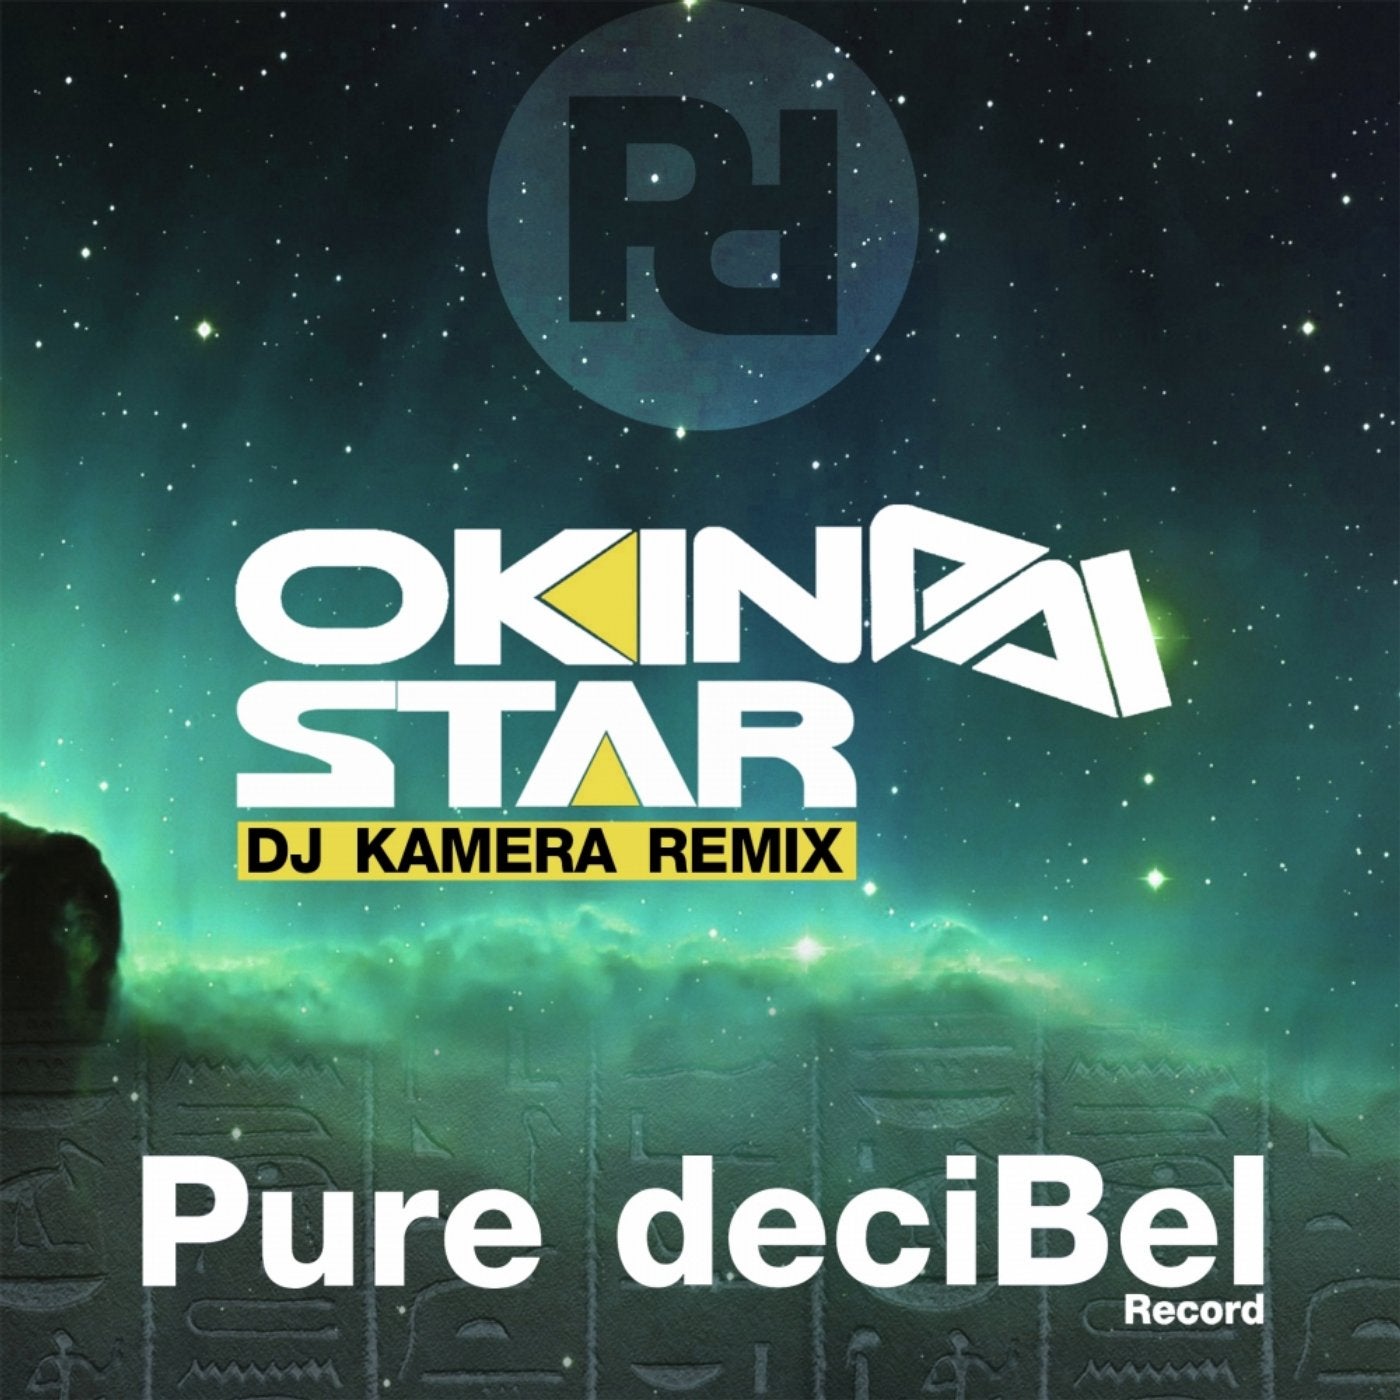 Star (DJ Kamera Remix)